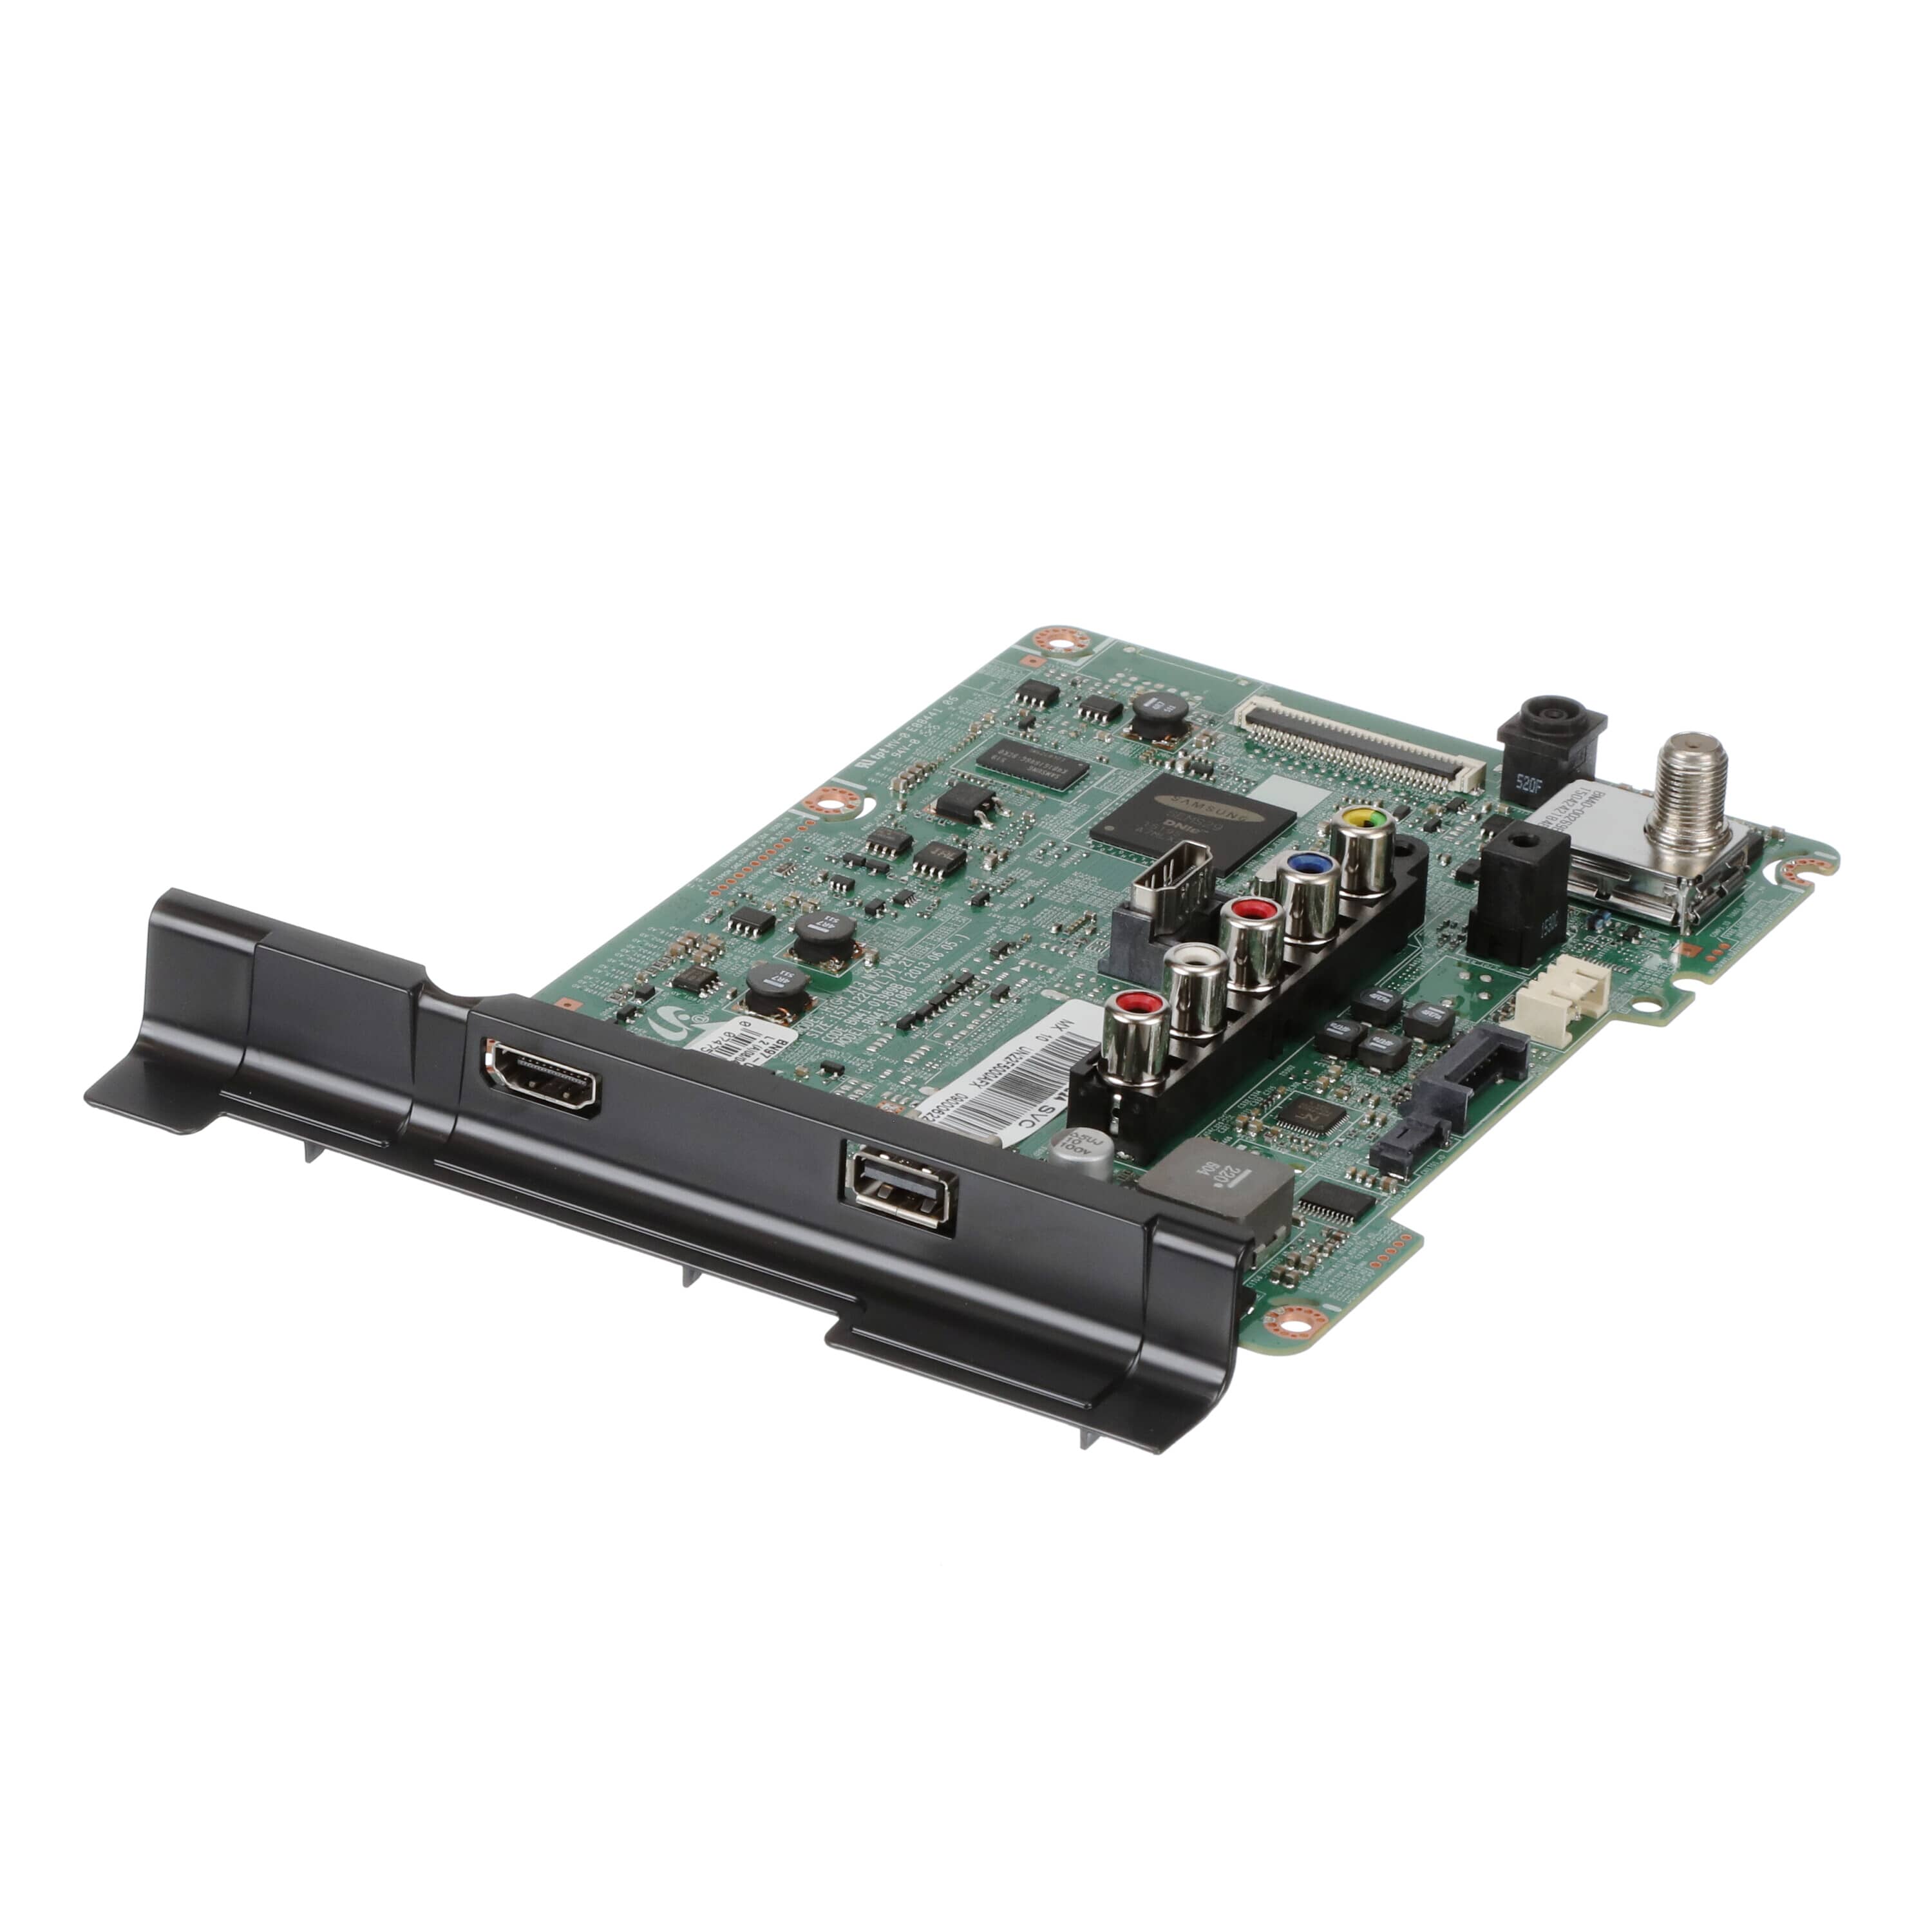 BN94-07773A Main PCB Board Assembly - Samsung Parts USA